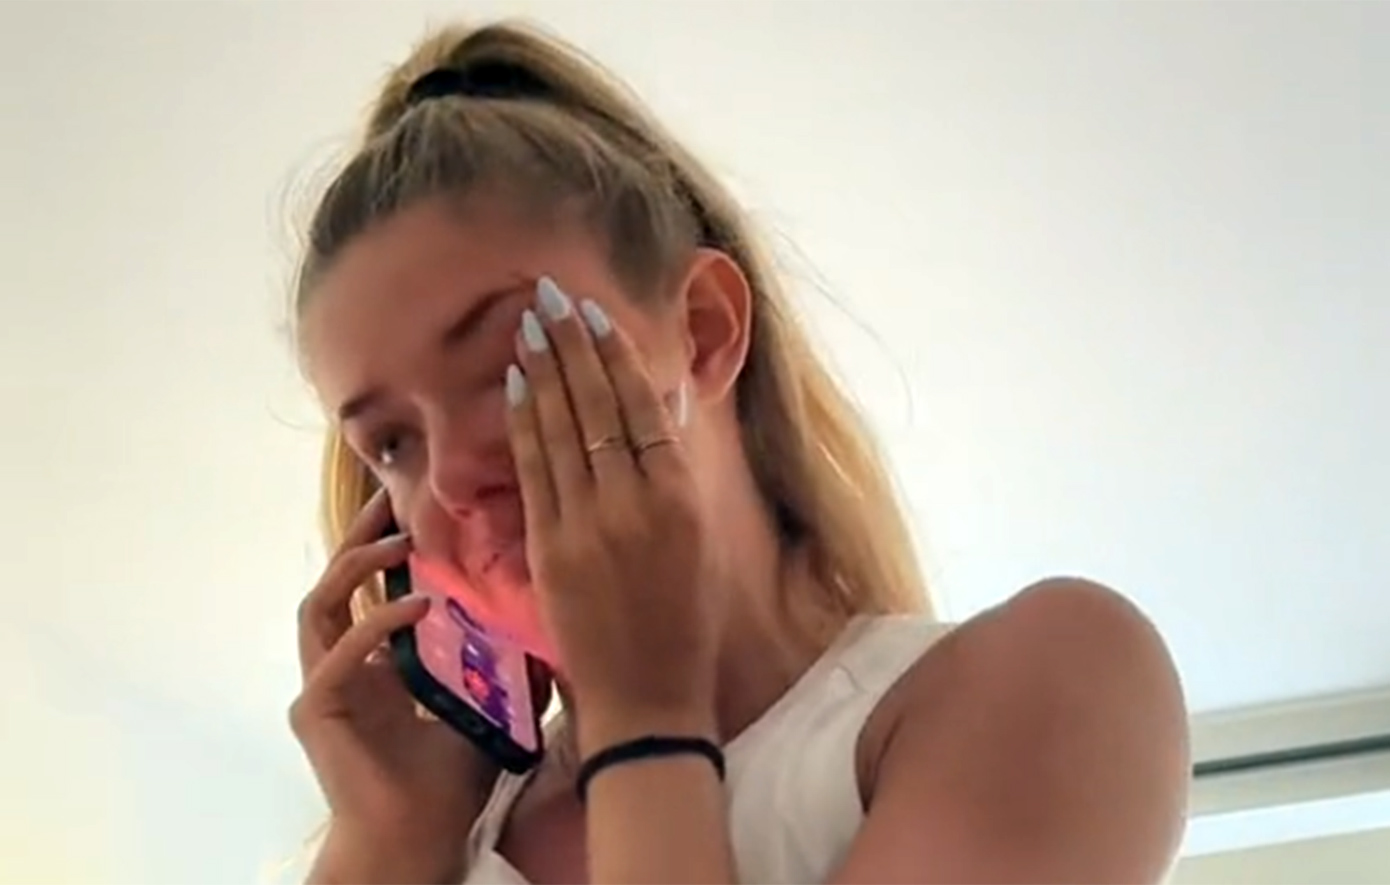 Τα δάκρυα της πιο σέξι αθλήτριας στον κόσμο όταν έμαθε ότι προκρίθηκε στους Ολυμπιακούς Αγώνες